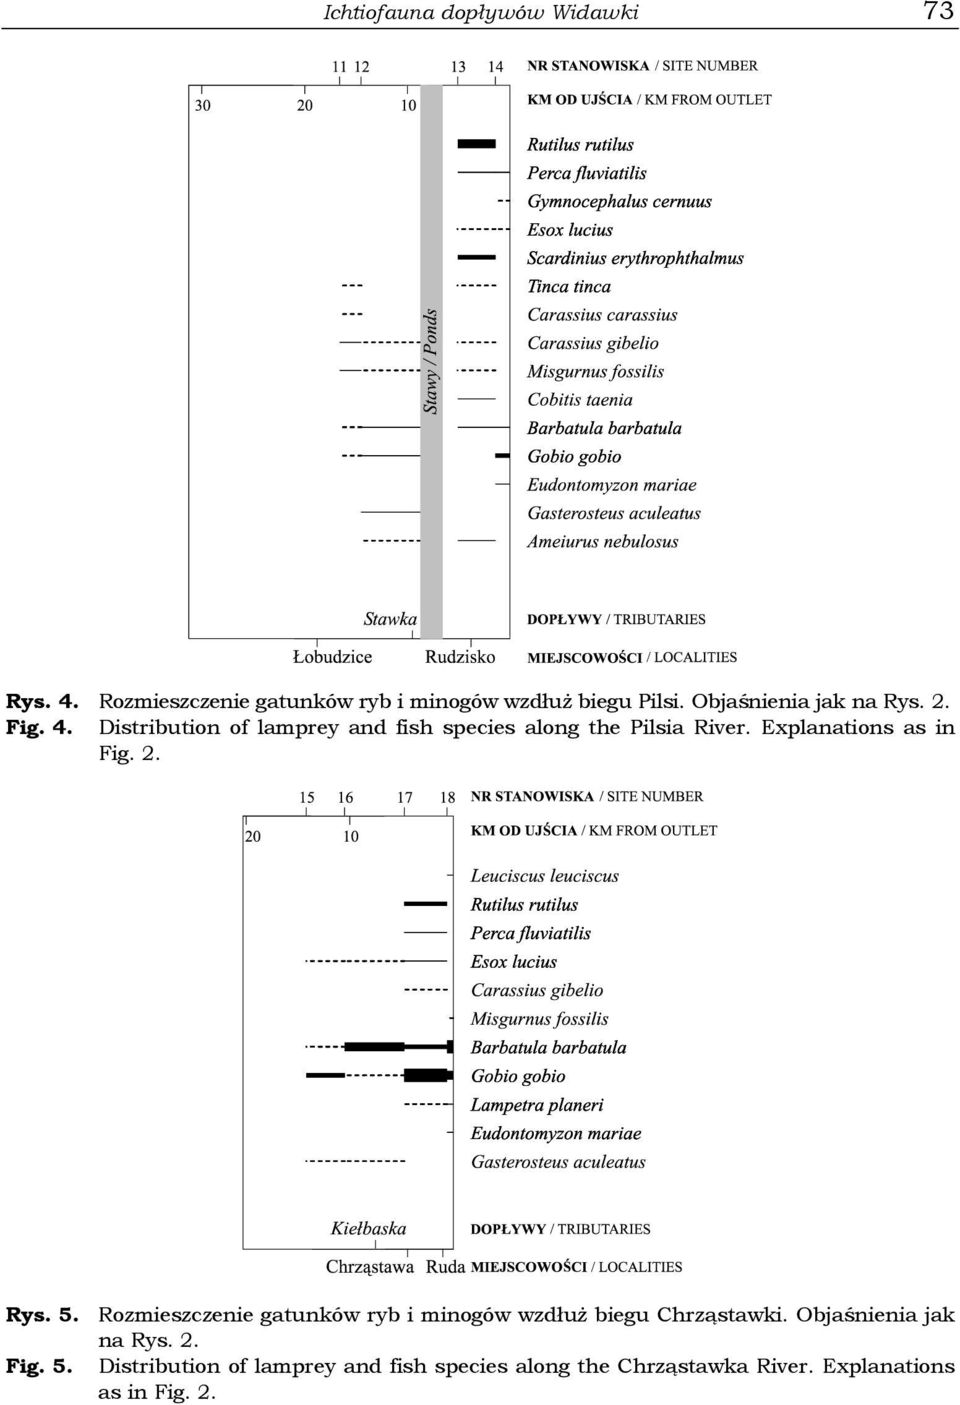 Explanations as in Fig. 2. Rys. 5. Rozmieszczenie gatunków ryb i minogów wzdłuż biegu Chrząstawki.